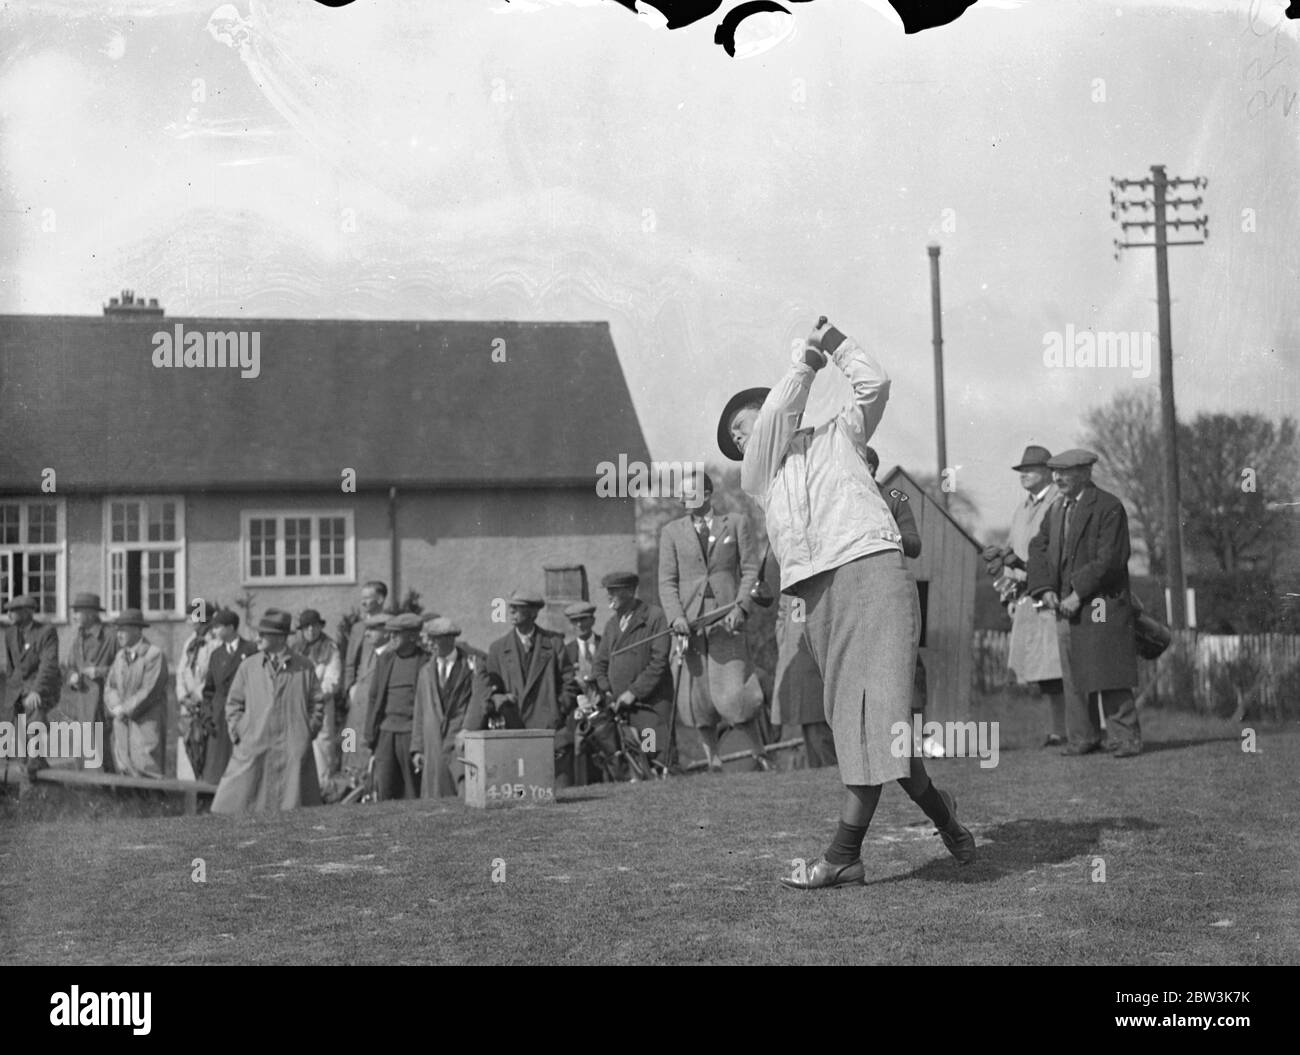 Miss Patty Berg spielt für amerikanische Mannschaft gegen englische Frauen Golfer in Sandy Lodge. Die Vereinigten Staaten Frauen ' s Golf-Team, die den Curtis Cup gegen Großbritannien am 6. Mai zu verteidigen sind, traf ein Team von bekannten englischen Golfern, die nicht in der britischen Seite in einem freundlichen Spiel in Sandy Lodge gehören. Foto zeigt, Patty Berg 18 Jahre alten amerikanischen Wunder Golfer, fahren aus dem ersten Tee. 27. April 1936 Stockfoto